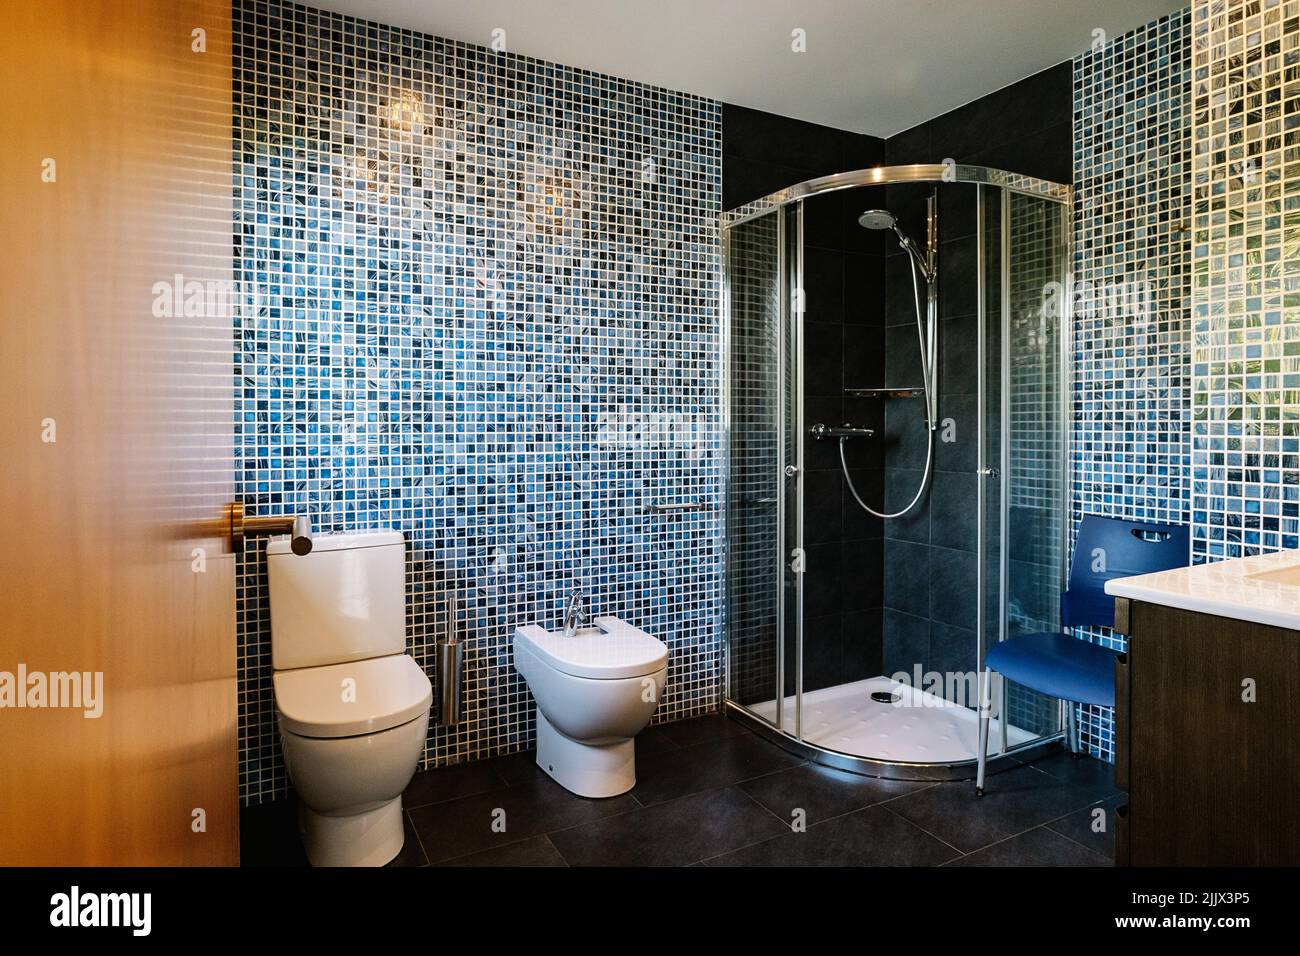 wc in ceramica bianca e bidet vicino alla cabina doccia in bagno moderno con pareti piastrellate in mosaico Foto Stock